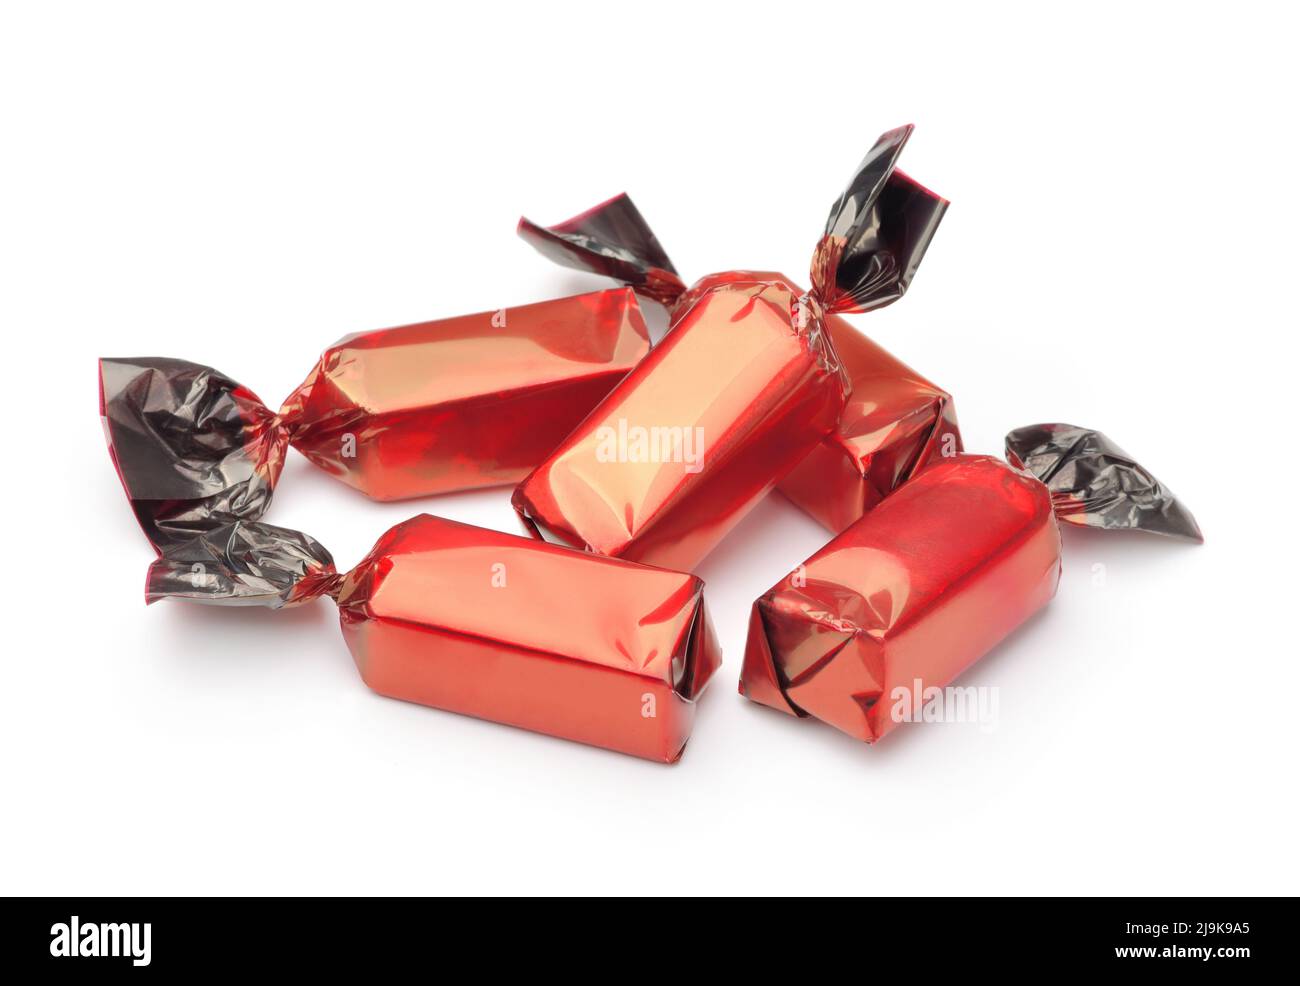 Groupe de bonbons au chocolat enveloppés dans des emballages rouges isolés sur du blanc Banque D'Images